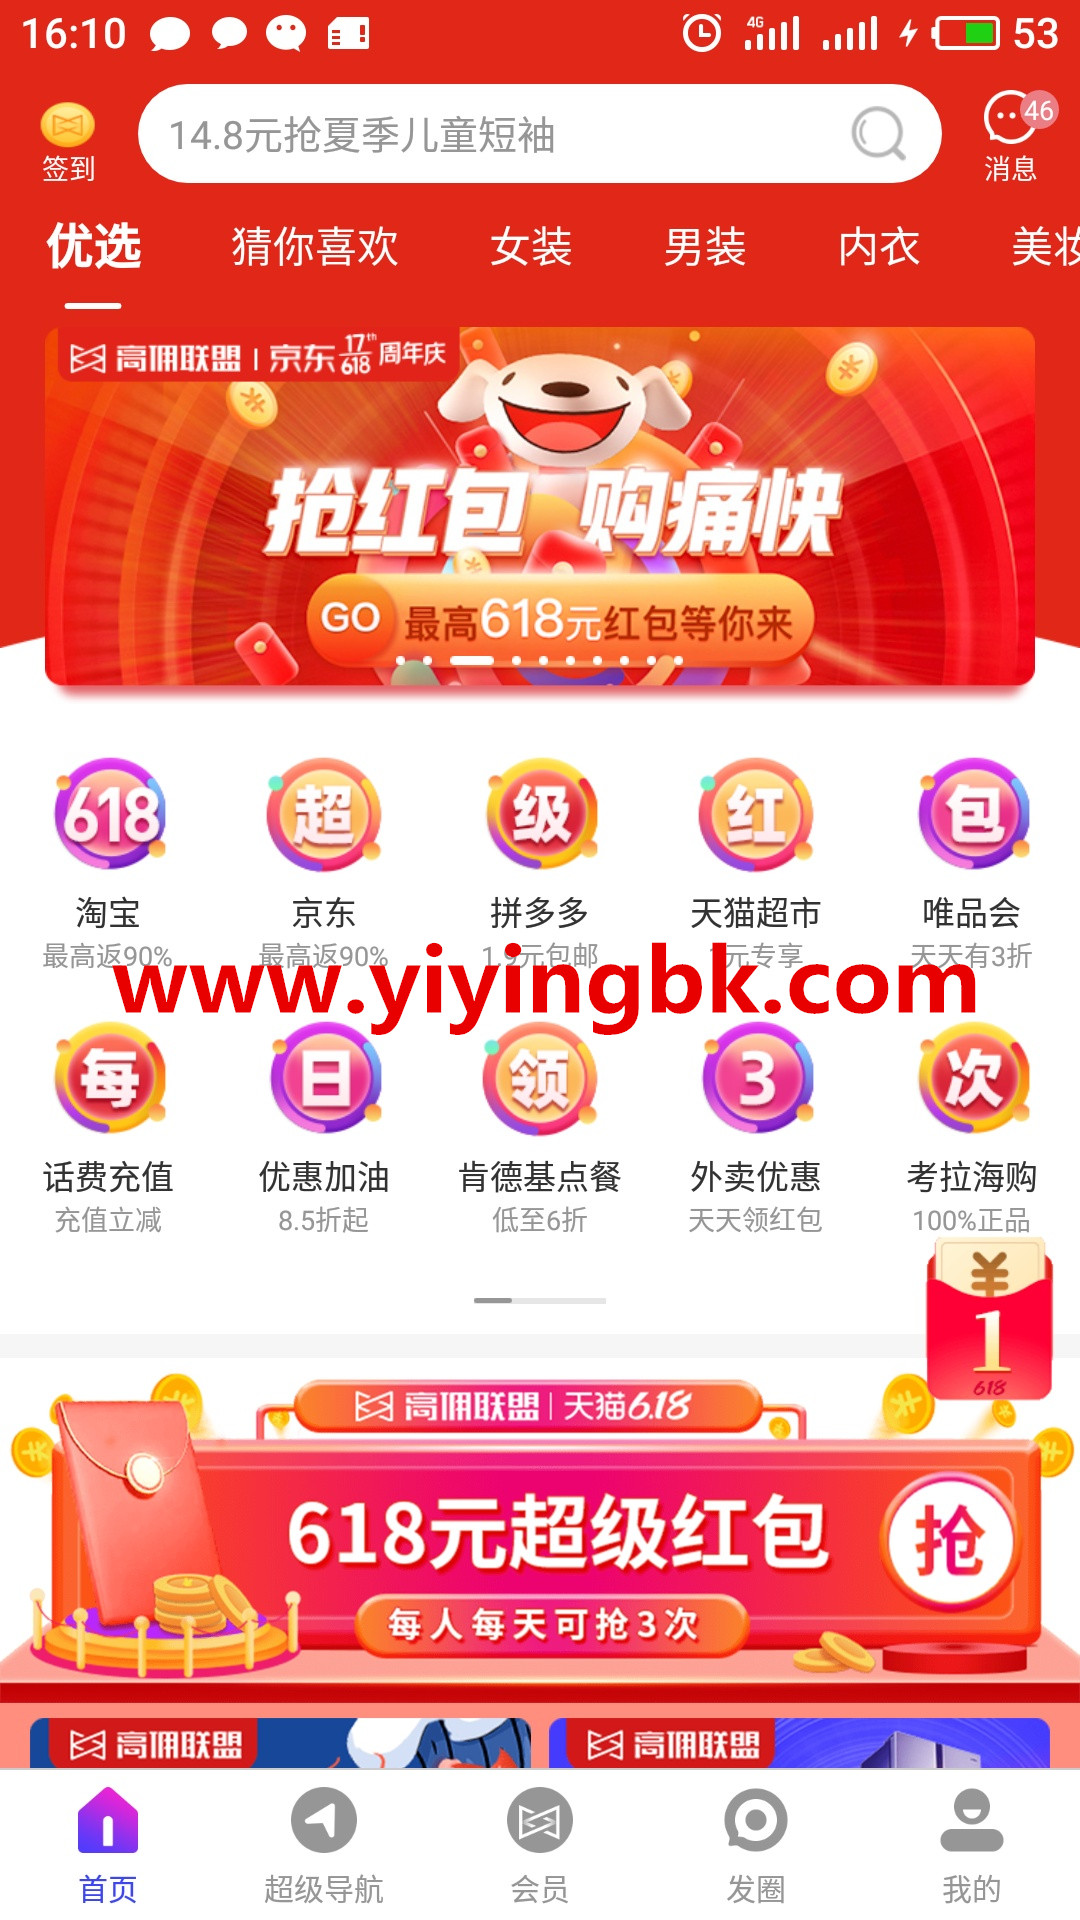 手机购物超级省钱返利红包，可以提现支付宝。www.yiyingbk.com